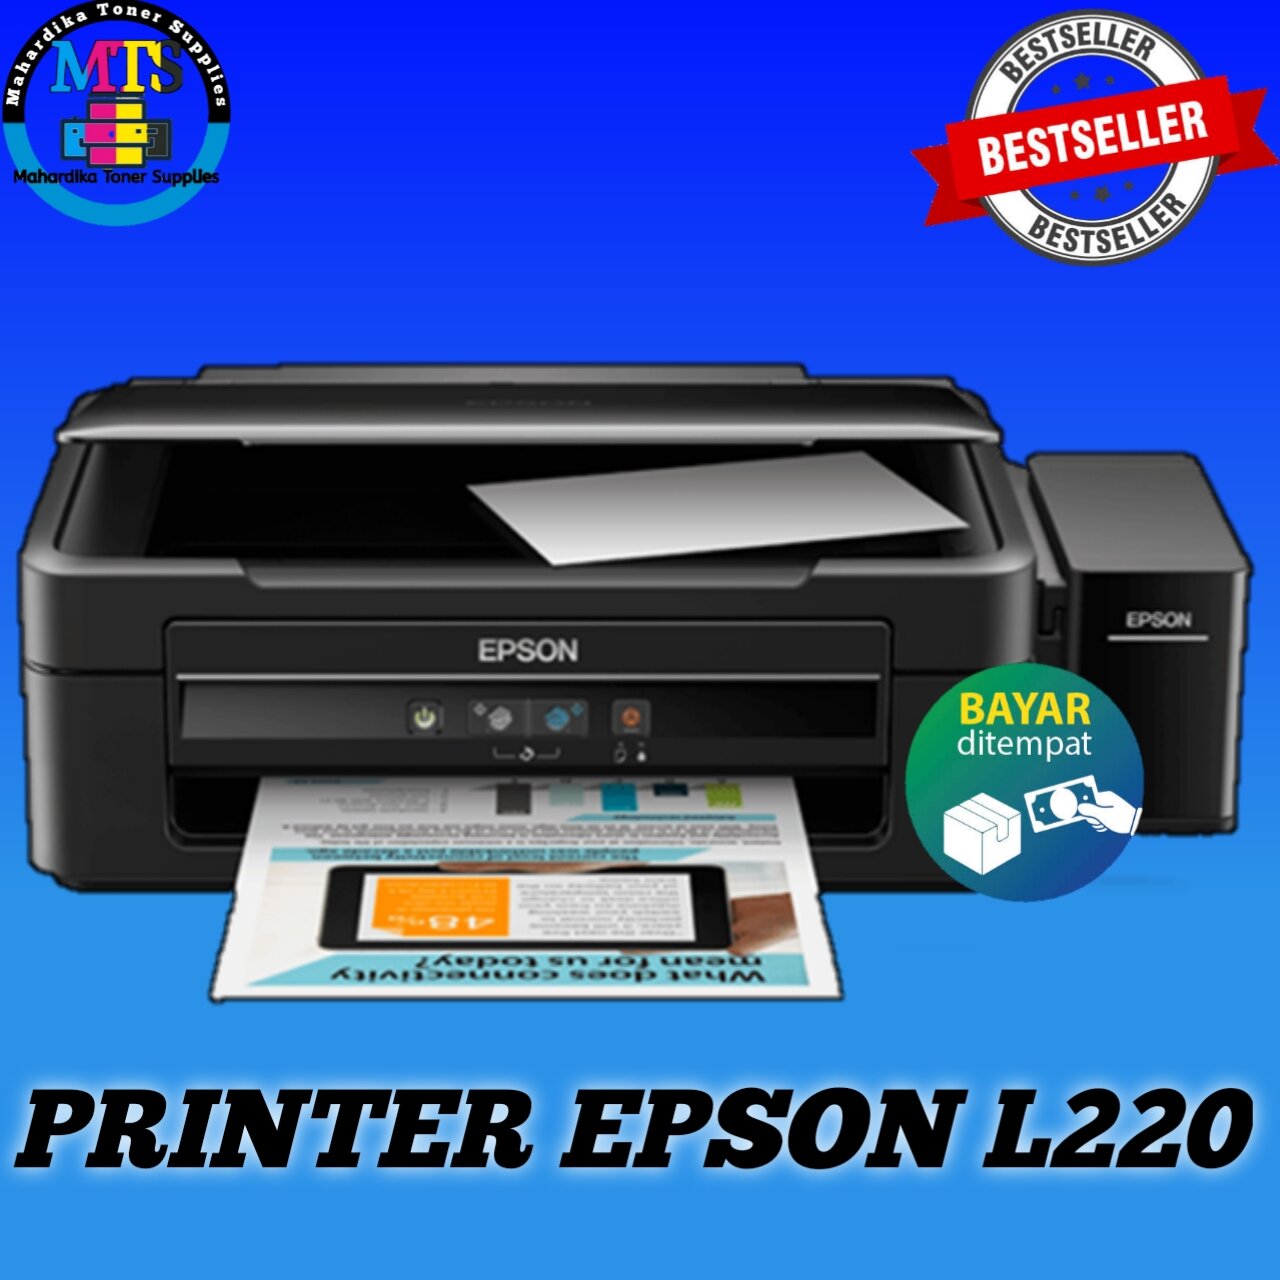 Printer Epson L220 Siap Pakai Garansi 1 Bulan Free Tinta 1 Set Bisa Cod Atau Instan Lazada 8337